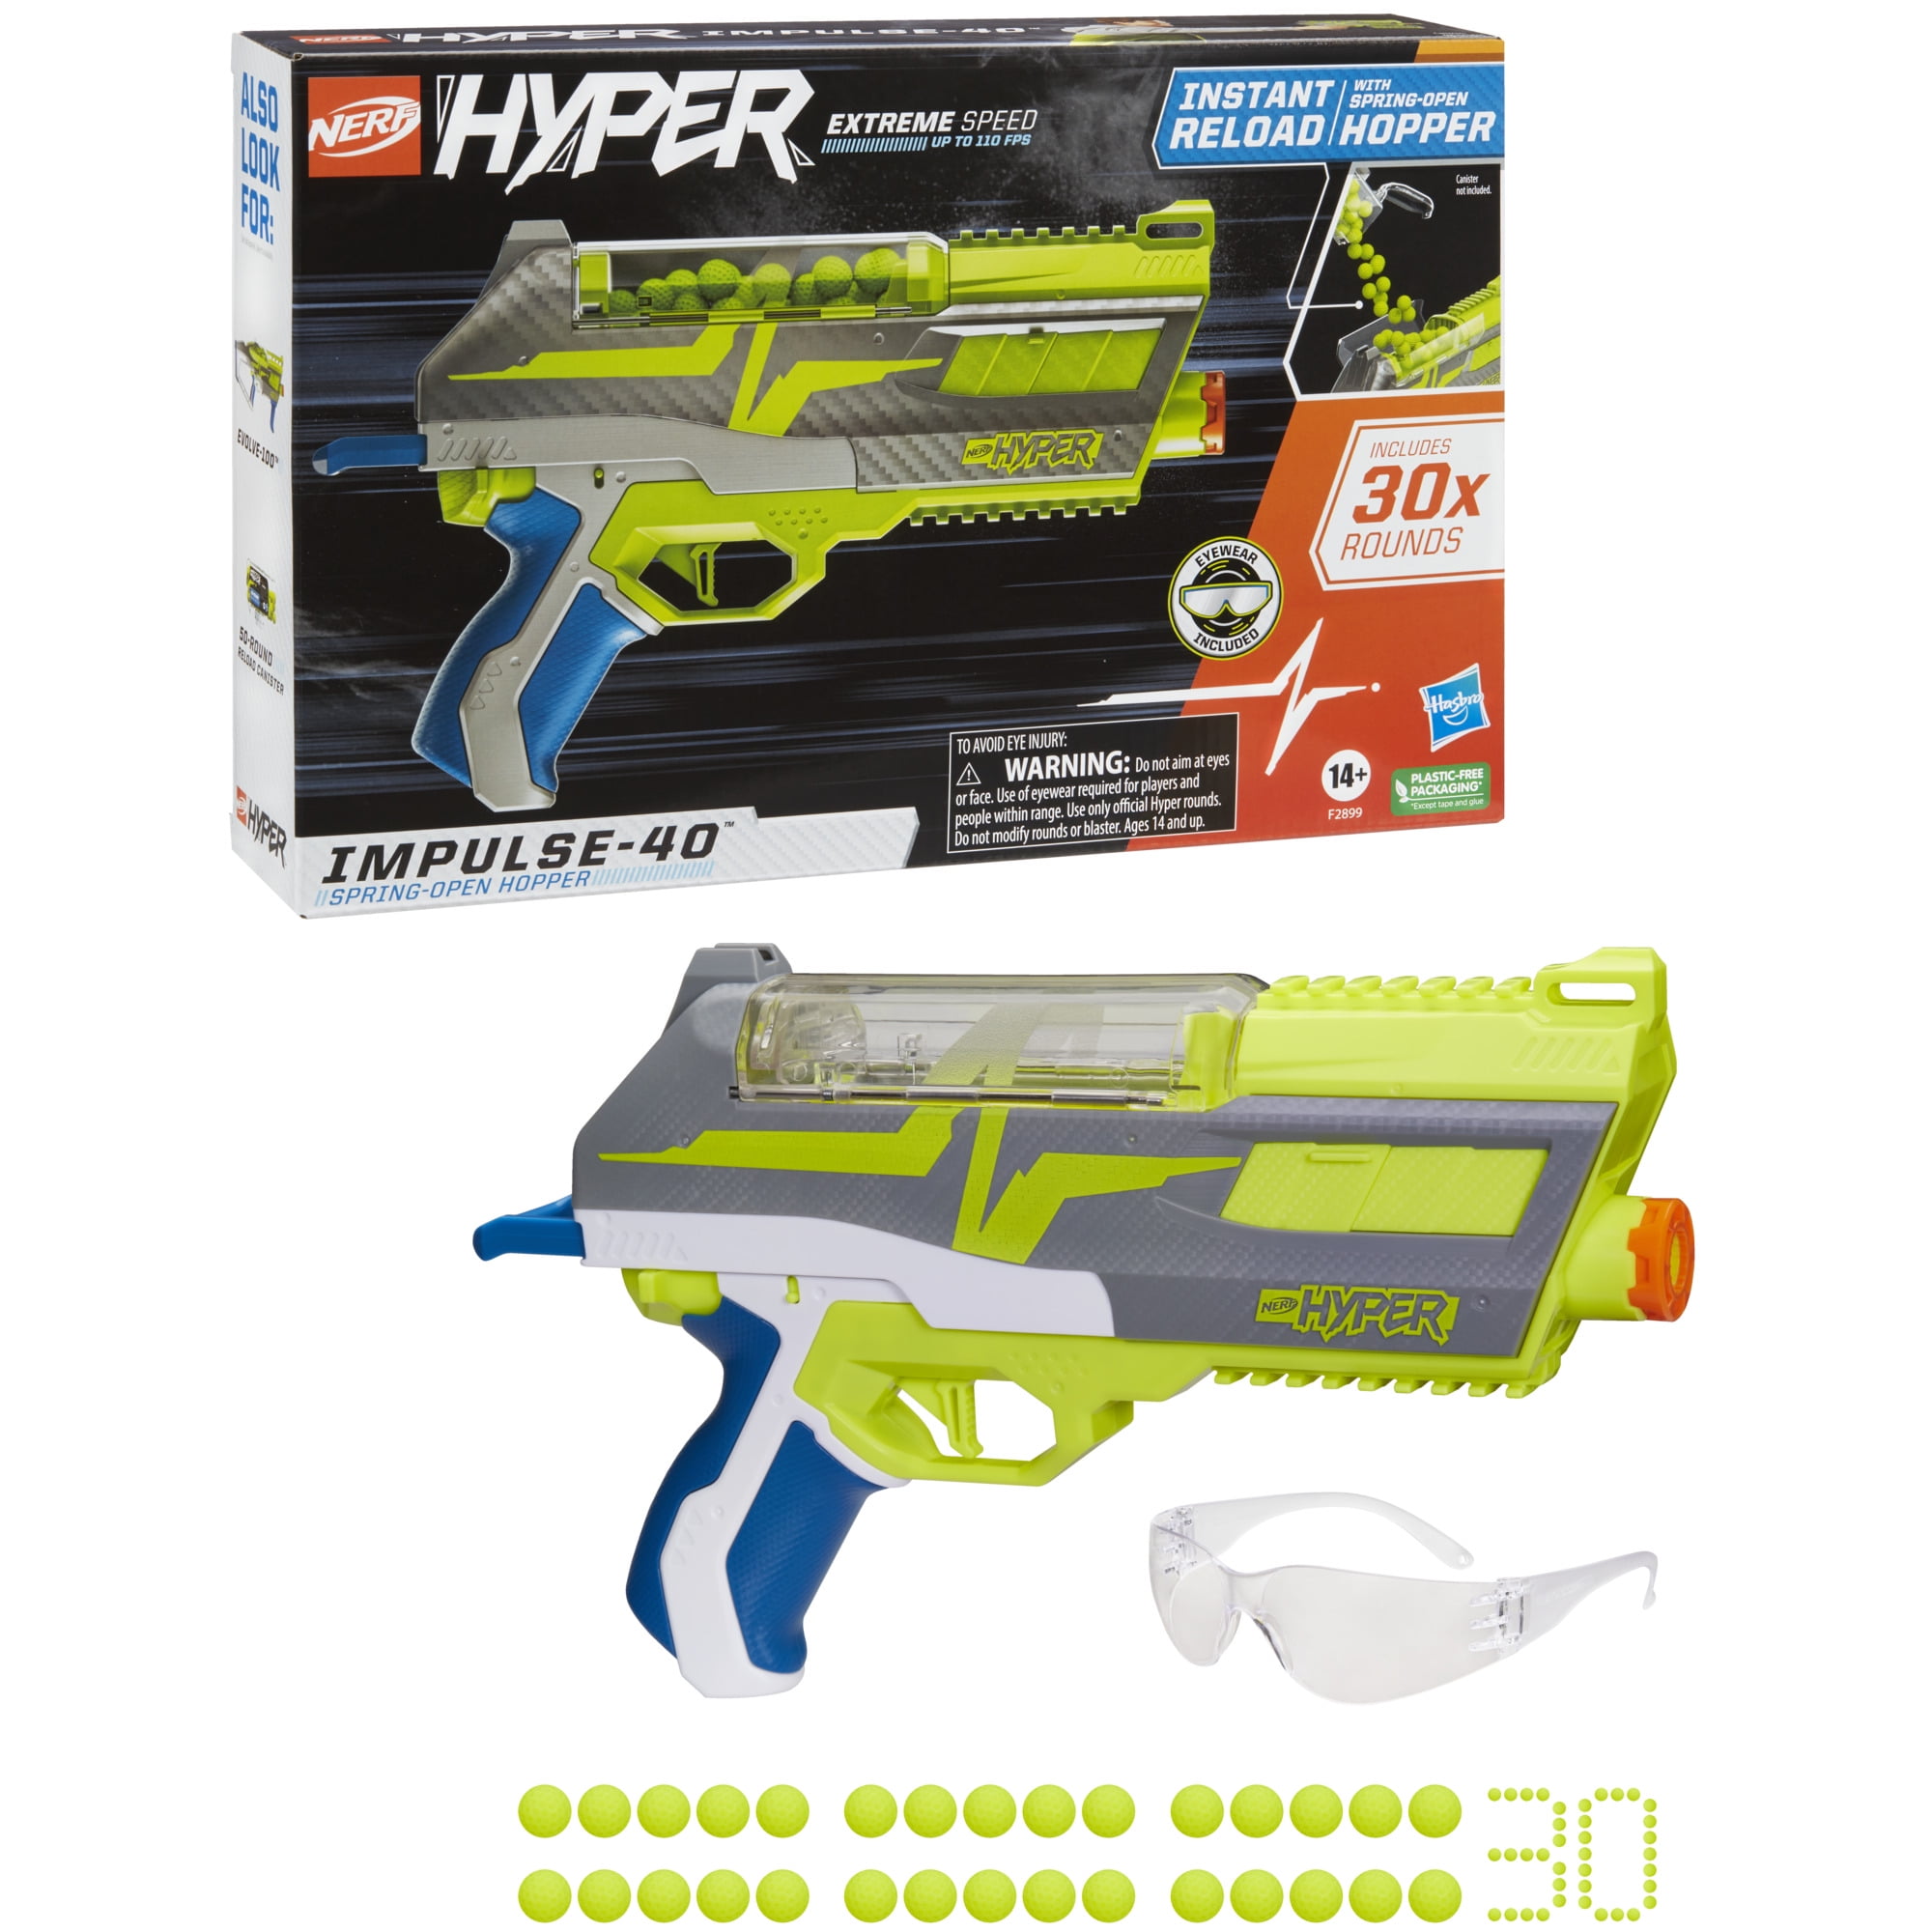 Bi Assimilate Korrekt Nerf Hyper Impulse-40 Blaster, 30 Nerf Hyper Rounds, Fires Up To 110 FPS  Velocity - Walmart.com